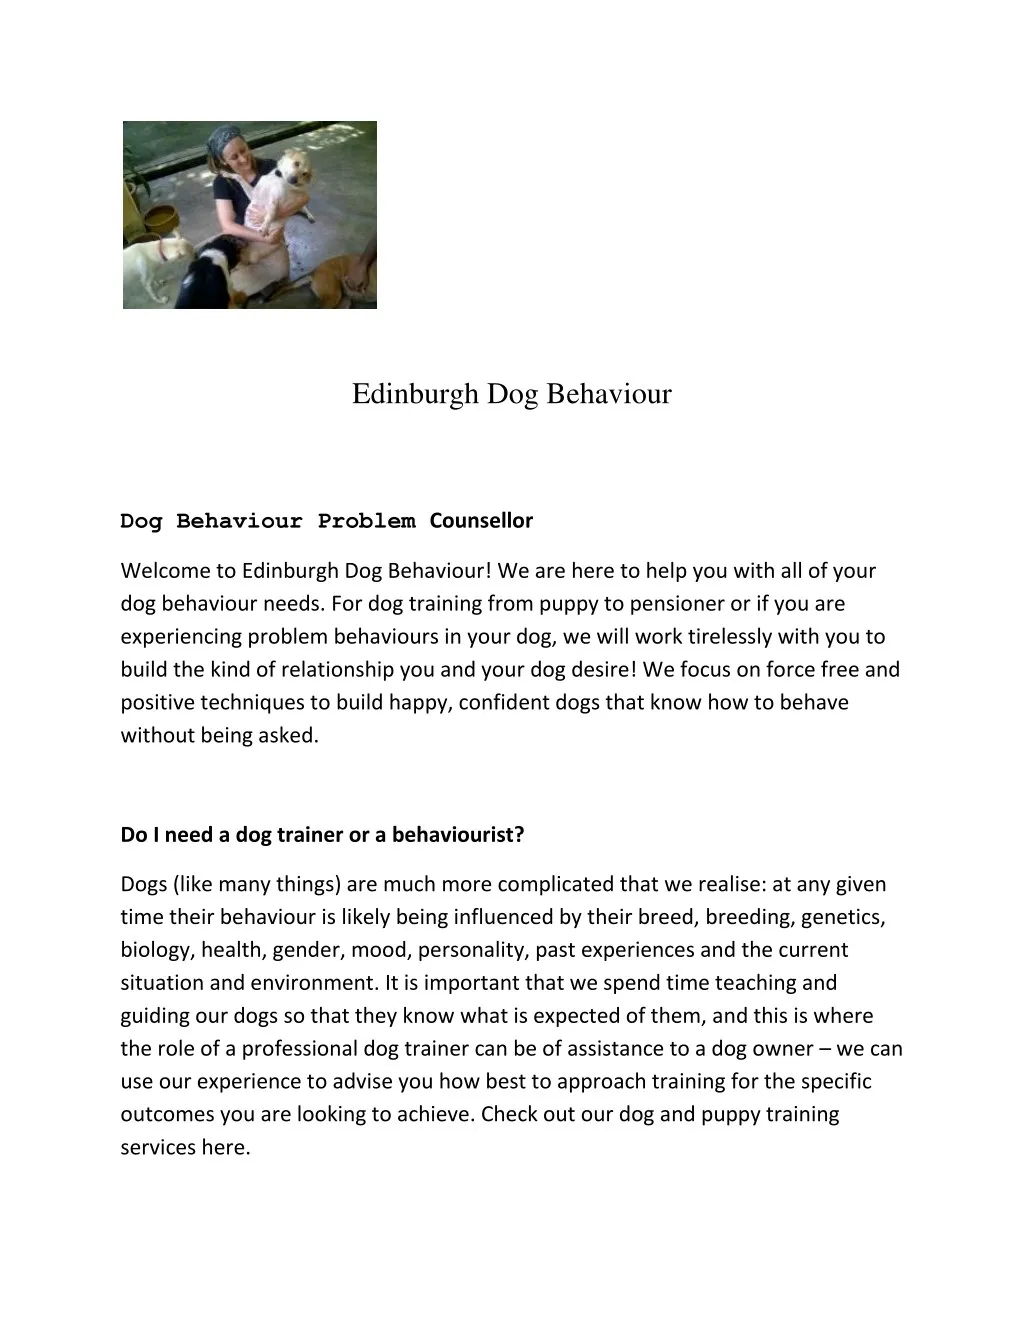 edinburgh dog behaviour